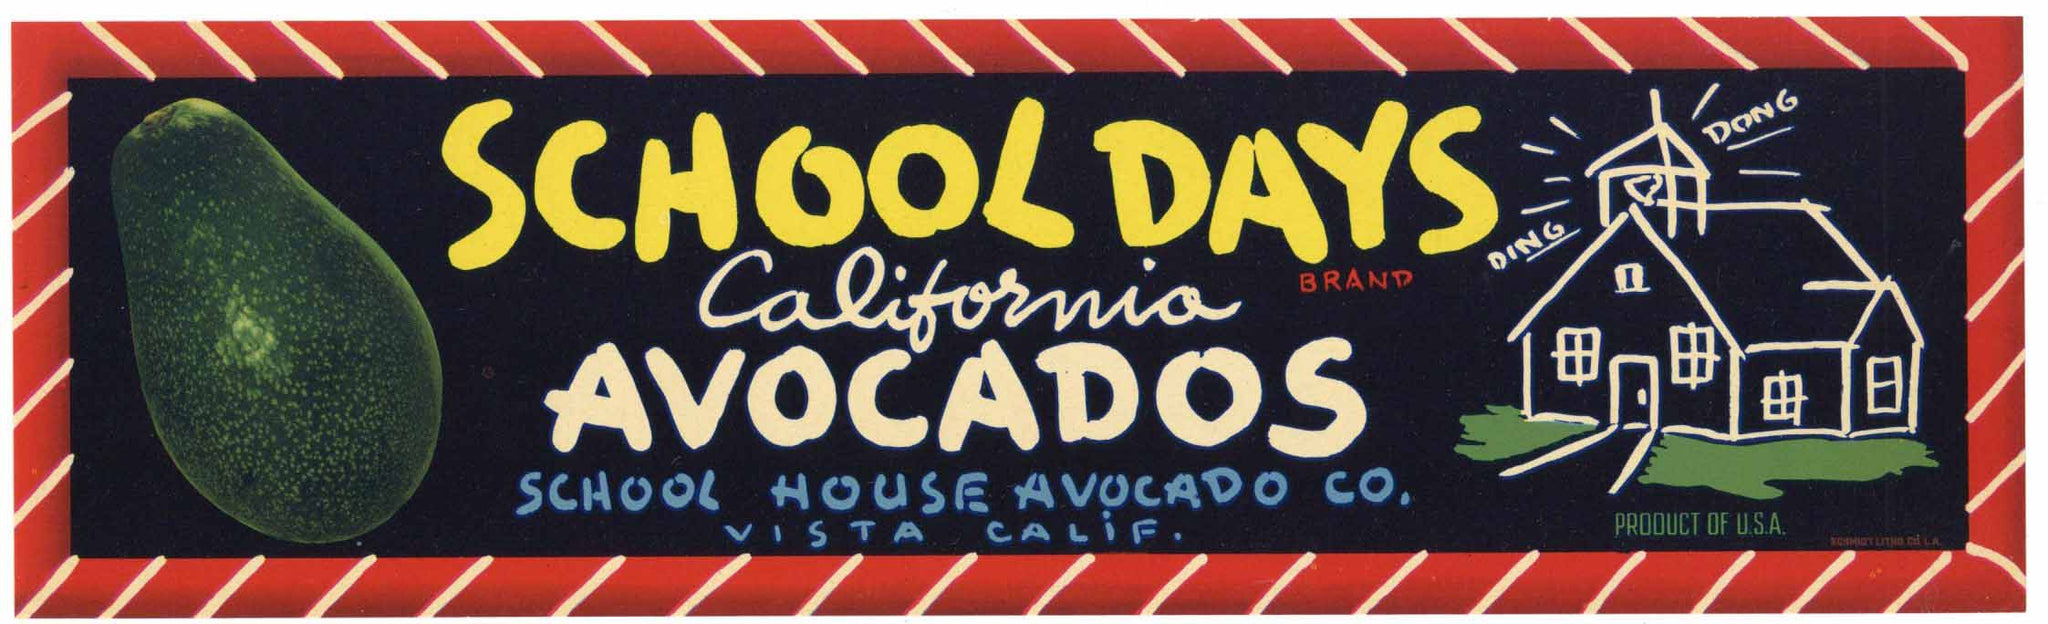 School Days Brand Vintage Vista California Avocado Crate Label